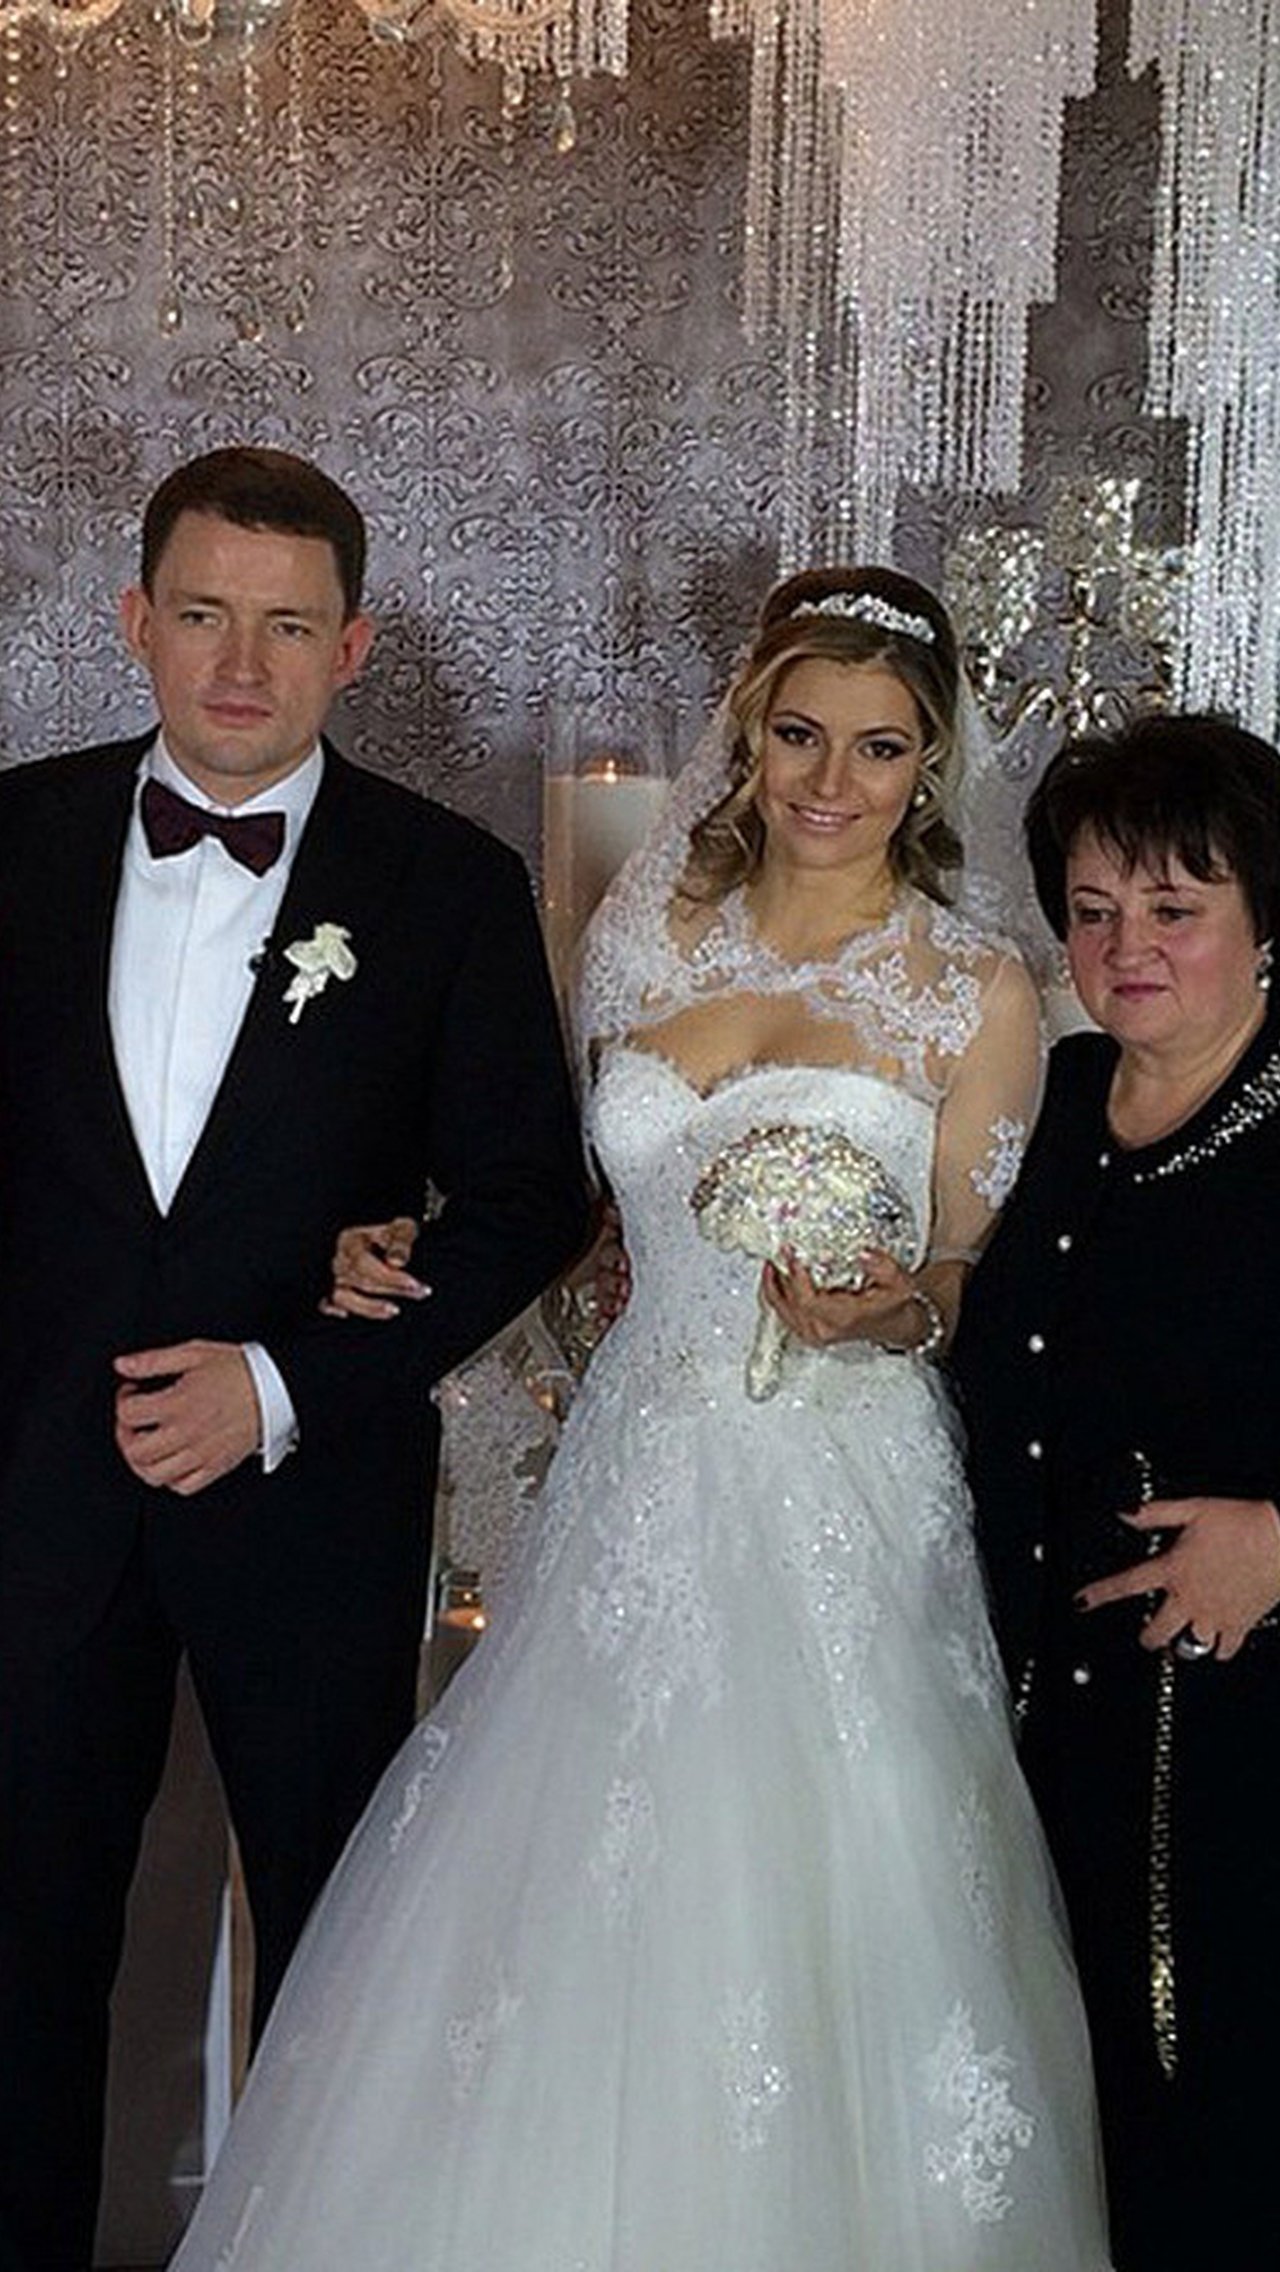 24 января 2015 года Кириленко вышла замуж за Алексея Степанова, главу Комитета государственных услуг города Москвы. 